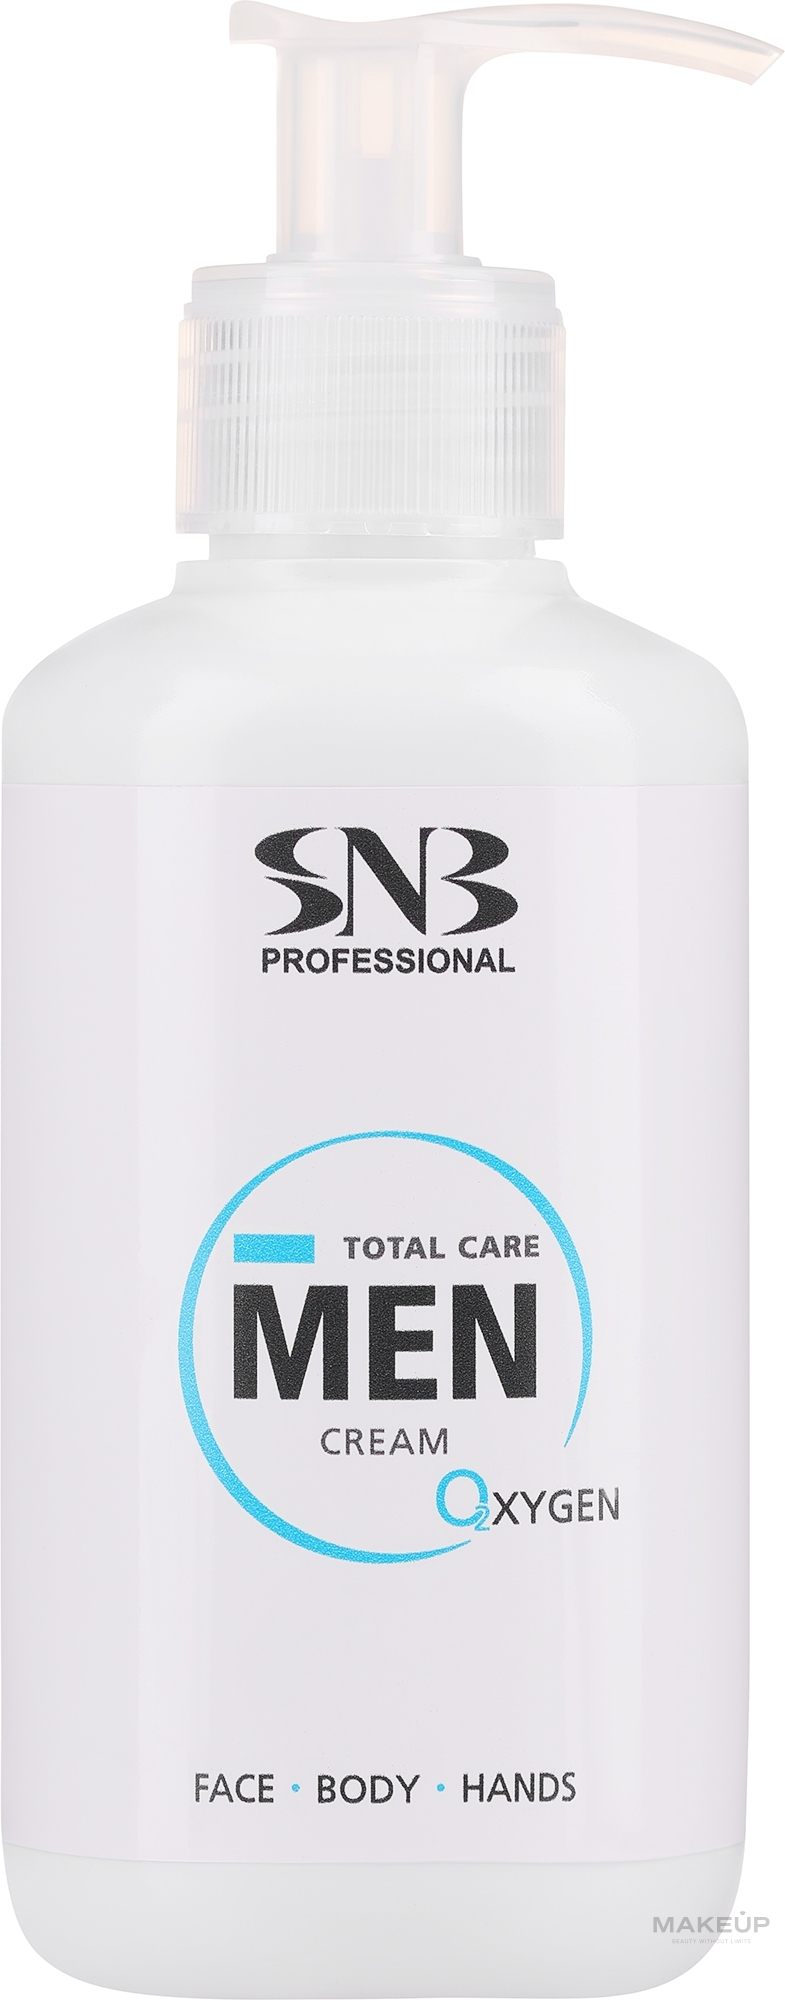 Feuchtigkeitsspendende und beruhigende Creme für Gesicht und Körper - SNB Professional Total Care Men Cream Oxygen  — Bild 250 ml